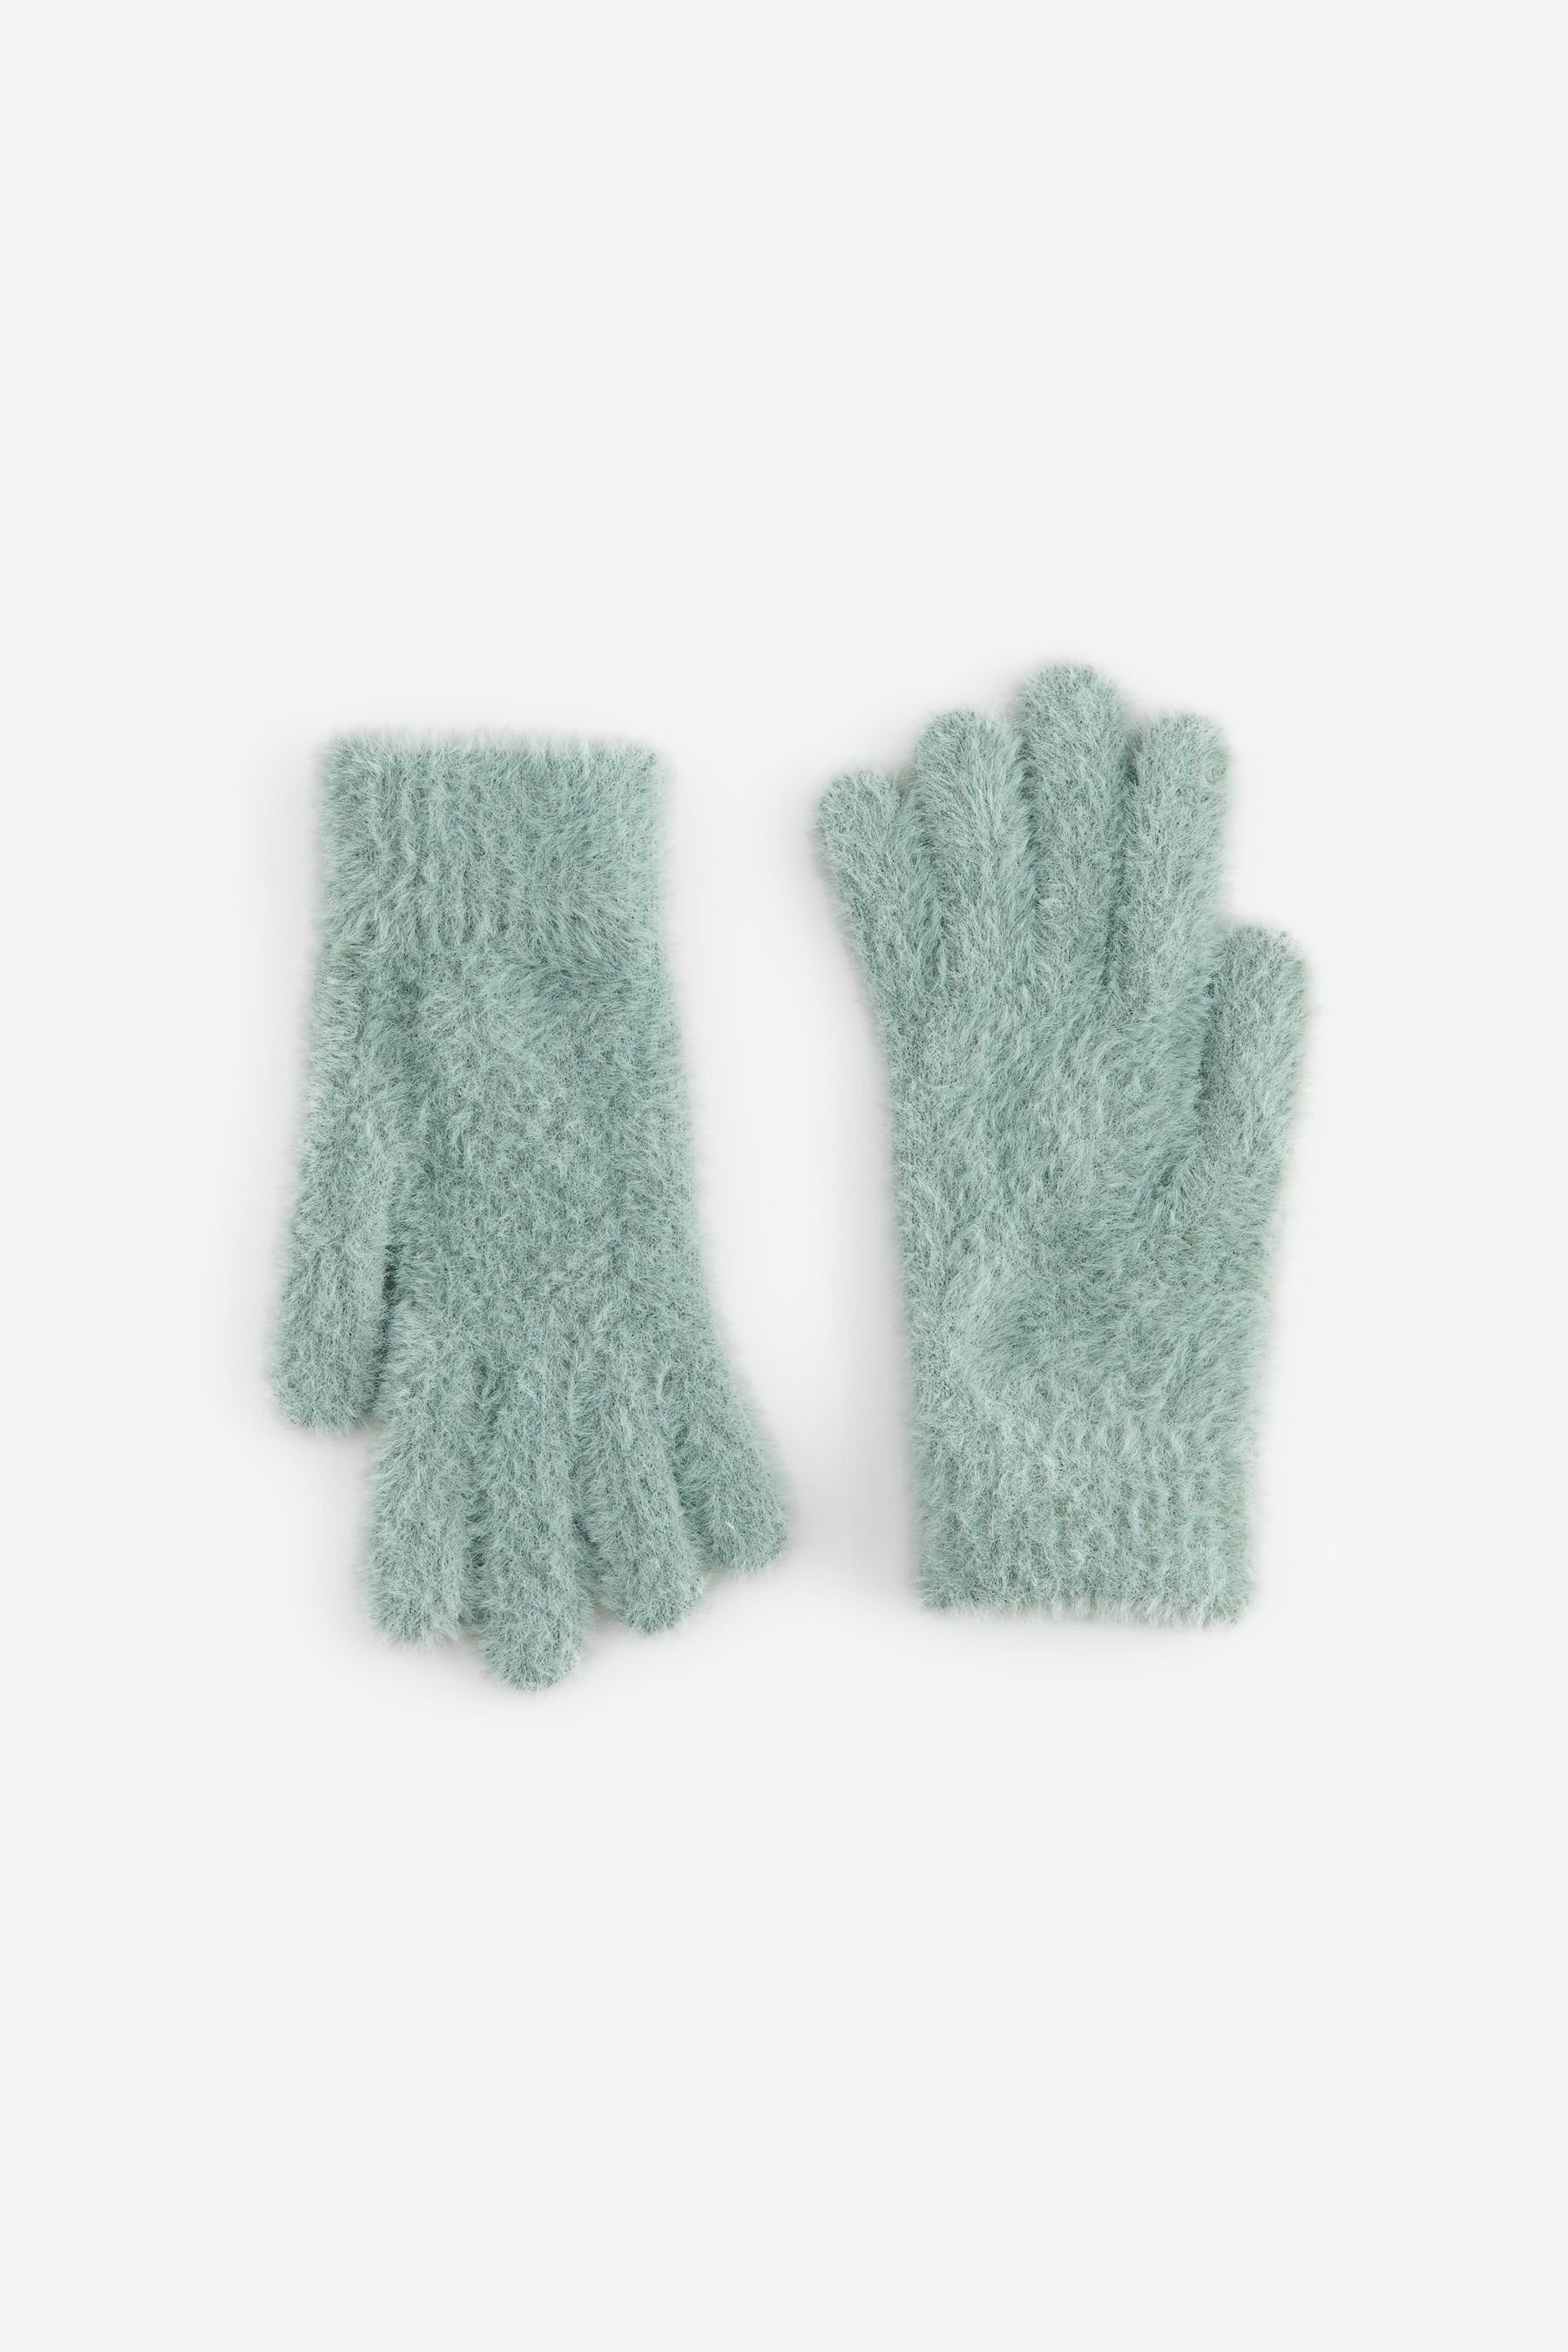 Next Strickhandschuhe Flauschige Handschuhe Sage Green